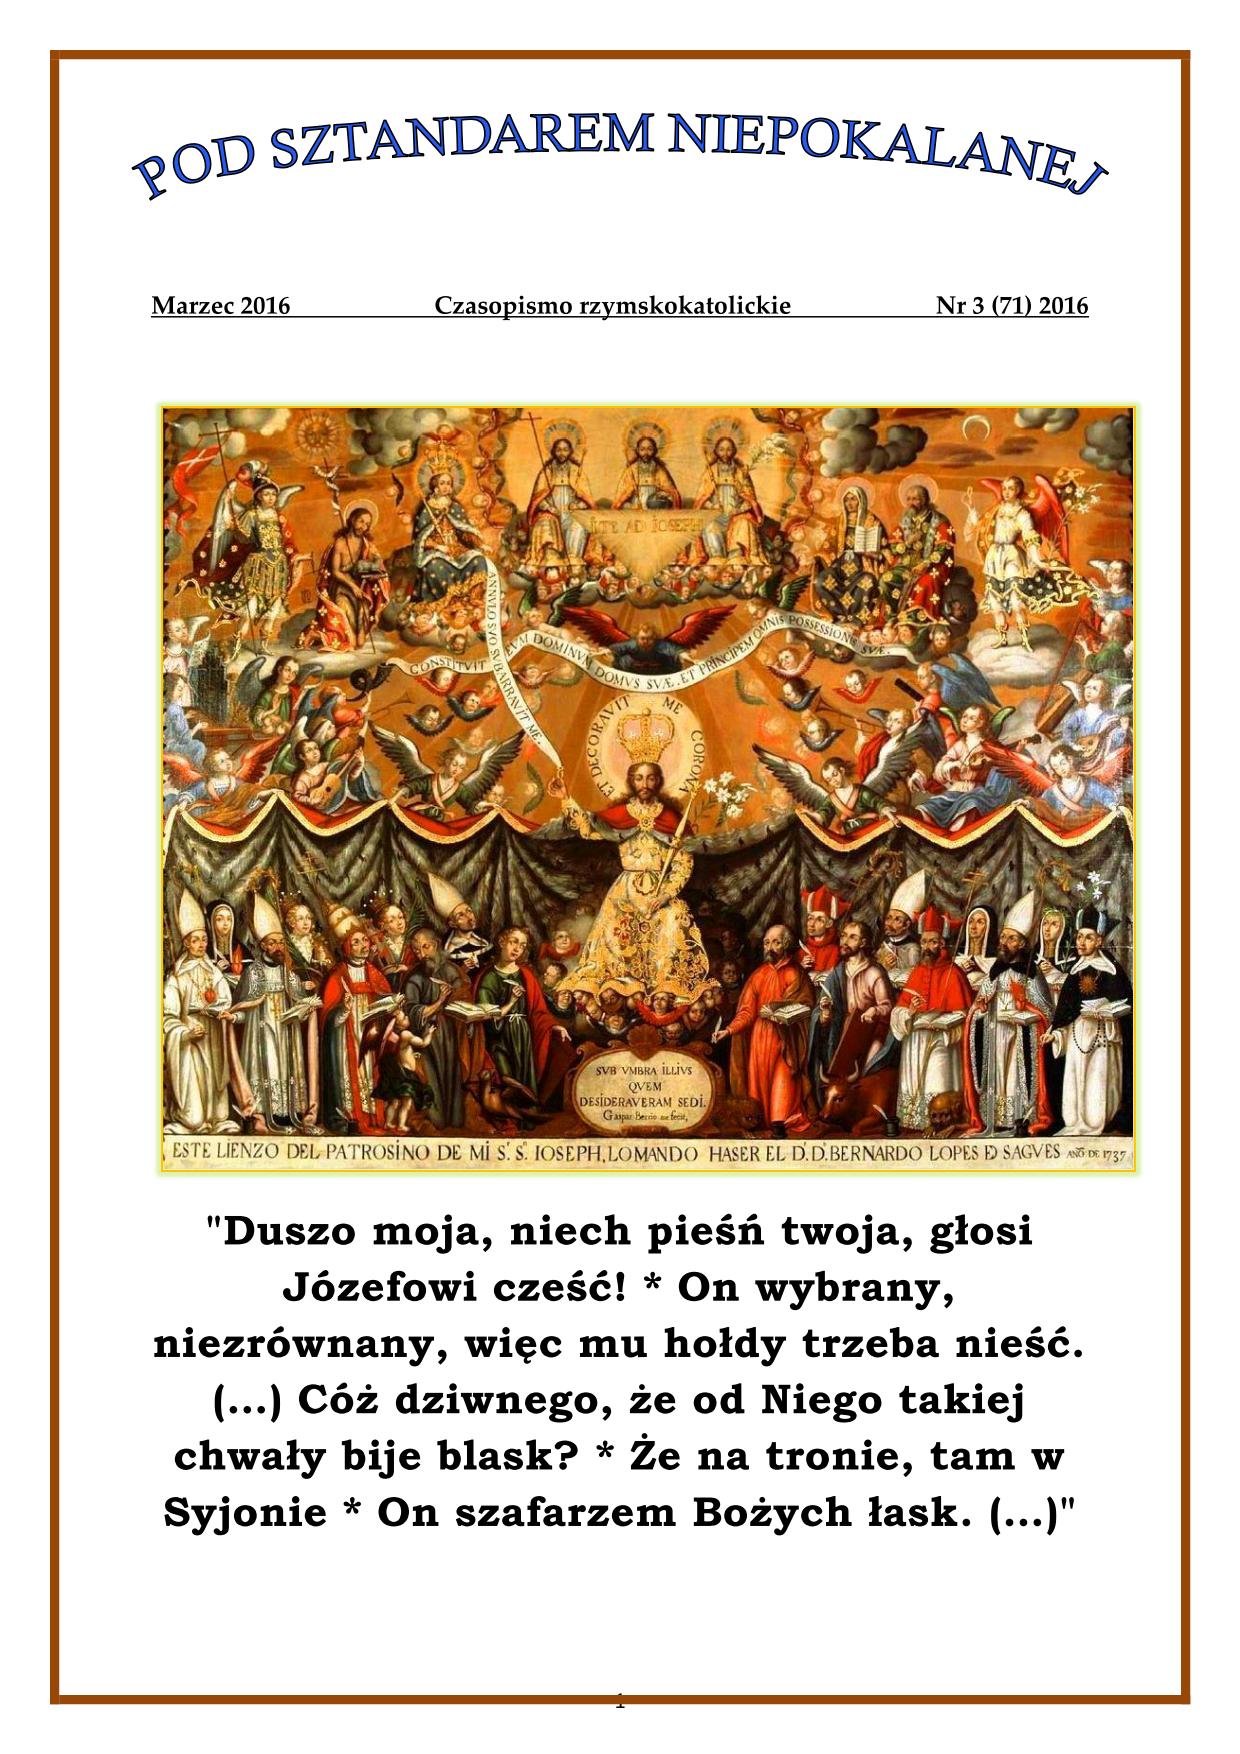 "Pod sztandarem Niepokalanej". Nr 71. Marzec 2016. Czasopismo rzymskokatolickie.